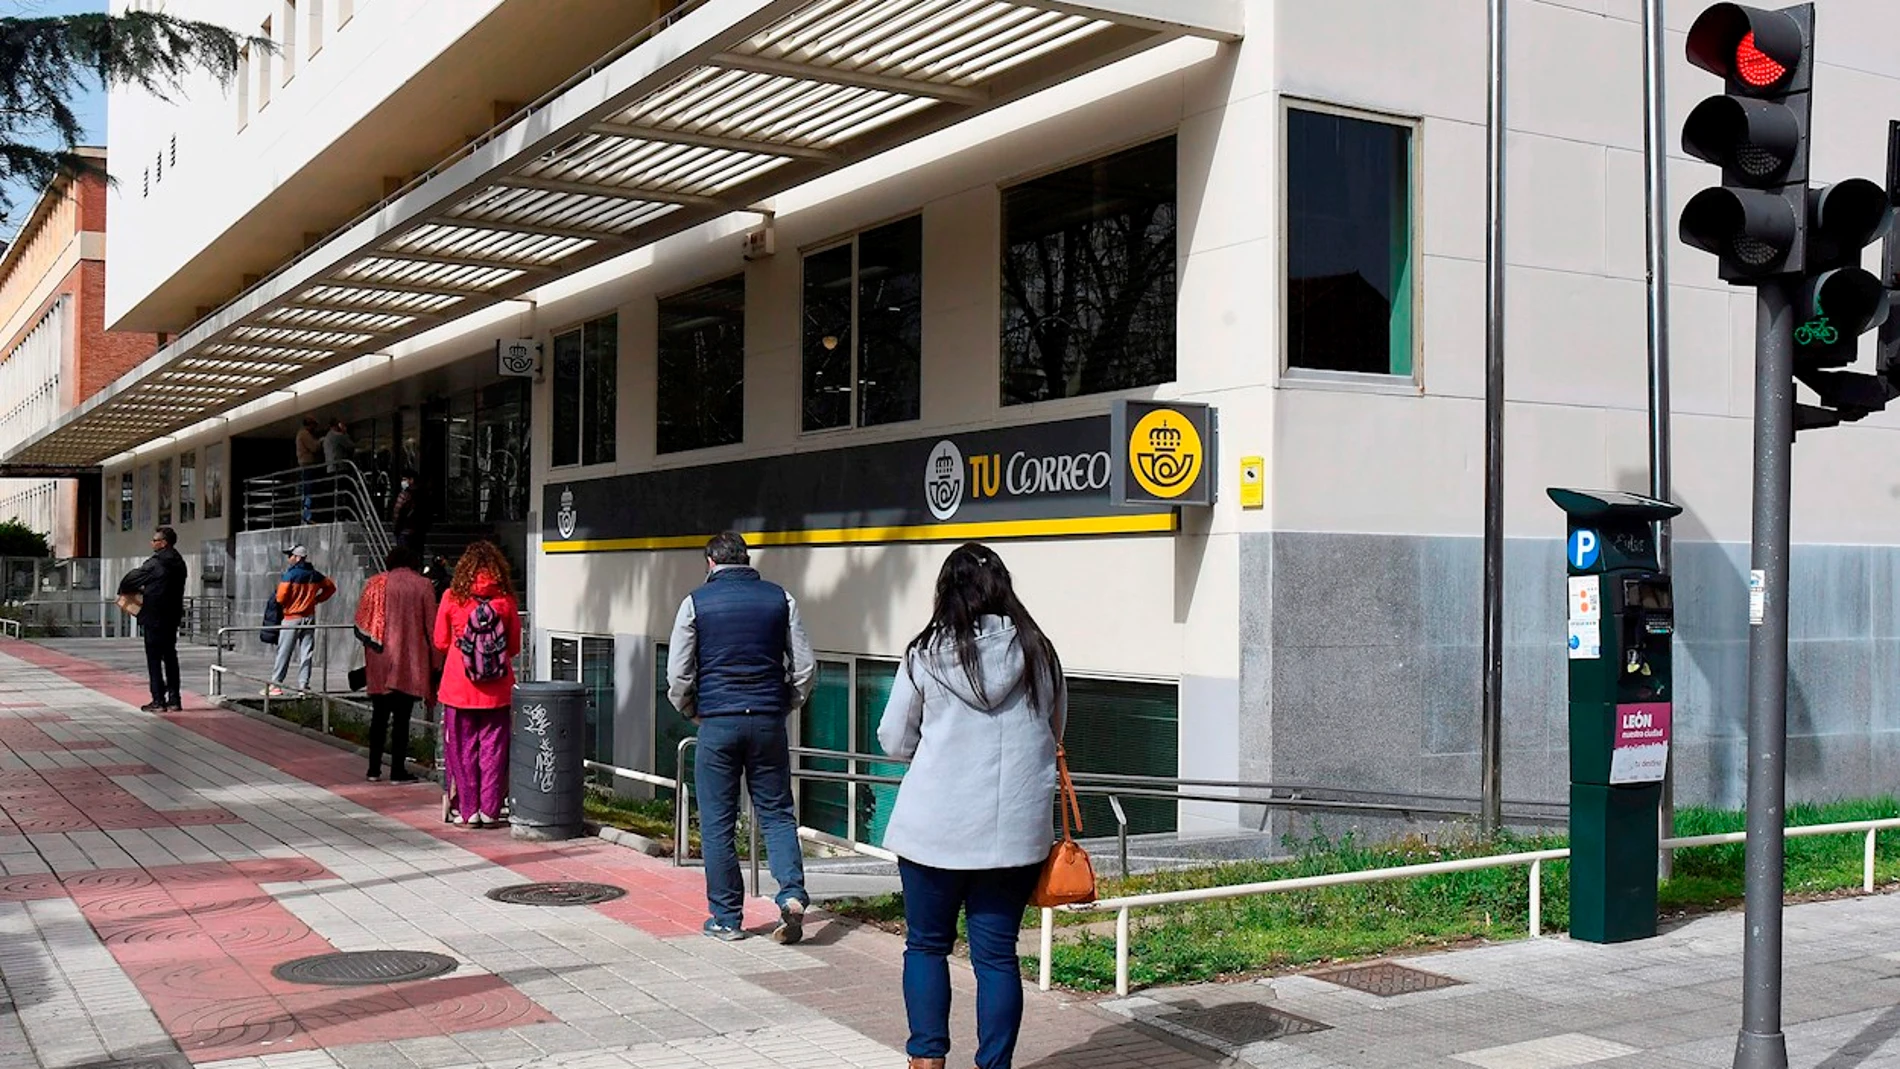 Correos instalará 1.500 cajeros automáticos en localidades de toda España